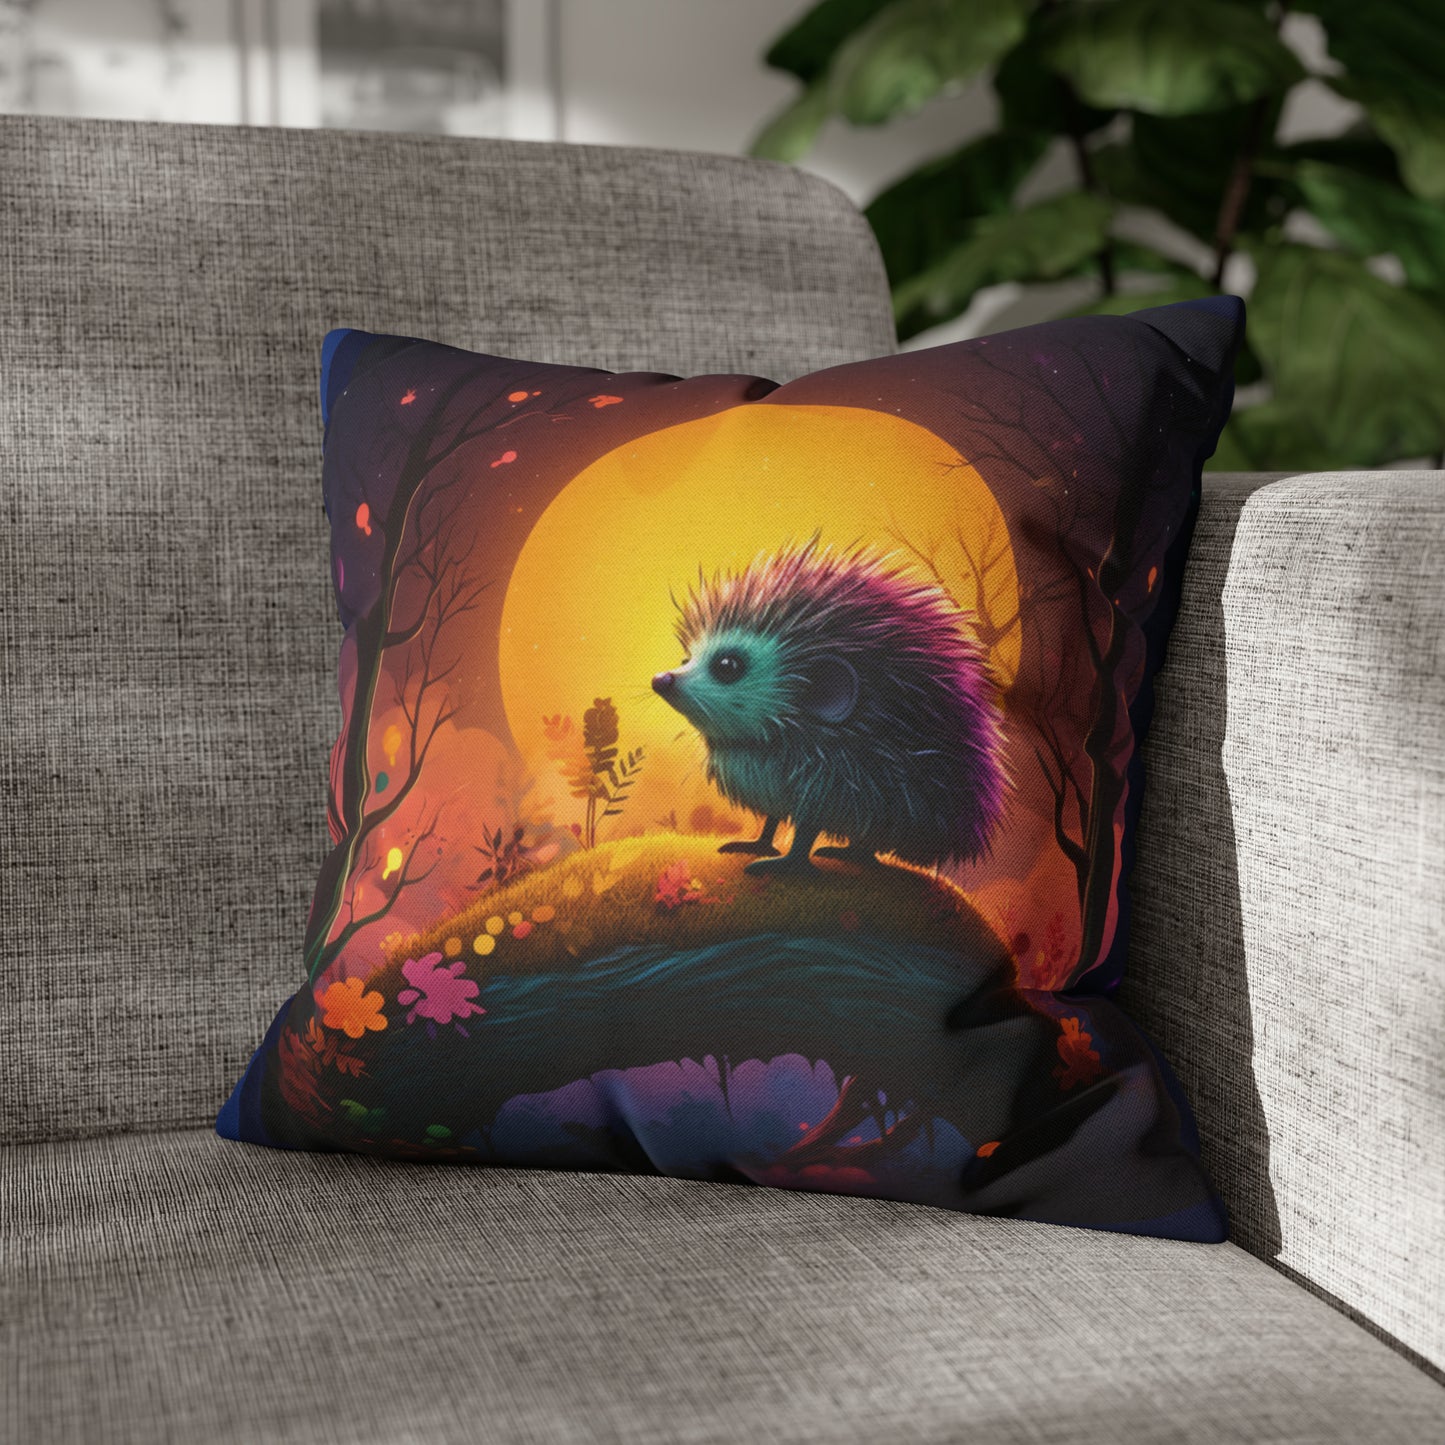 Square Pillow - Cute Hedgehog